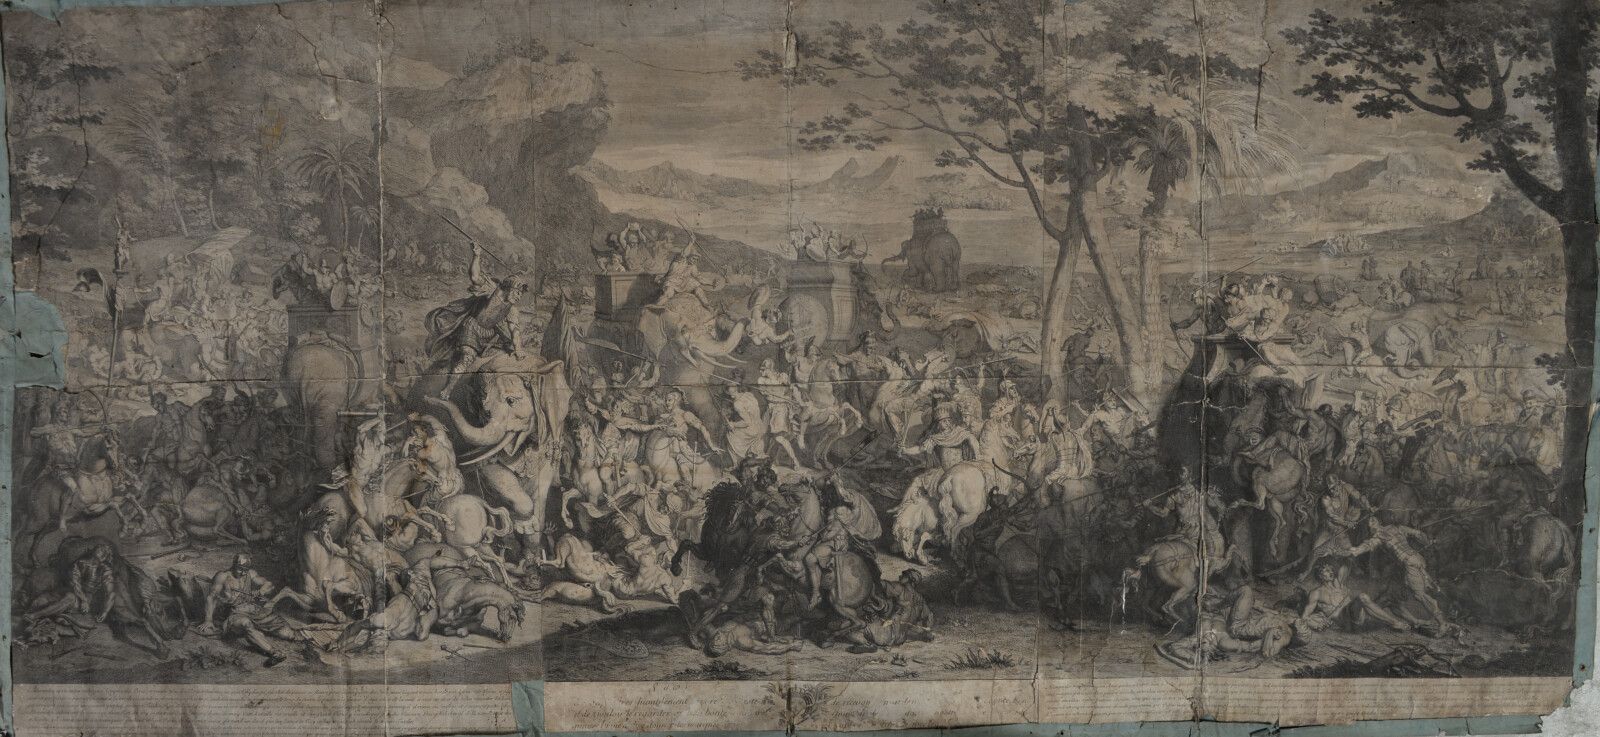 Null Bernard PICART (1673-1733)

La battaglia di Alessandro

Incisione nera inco&hellip;